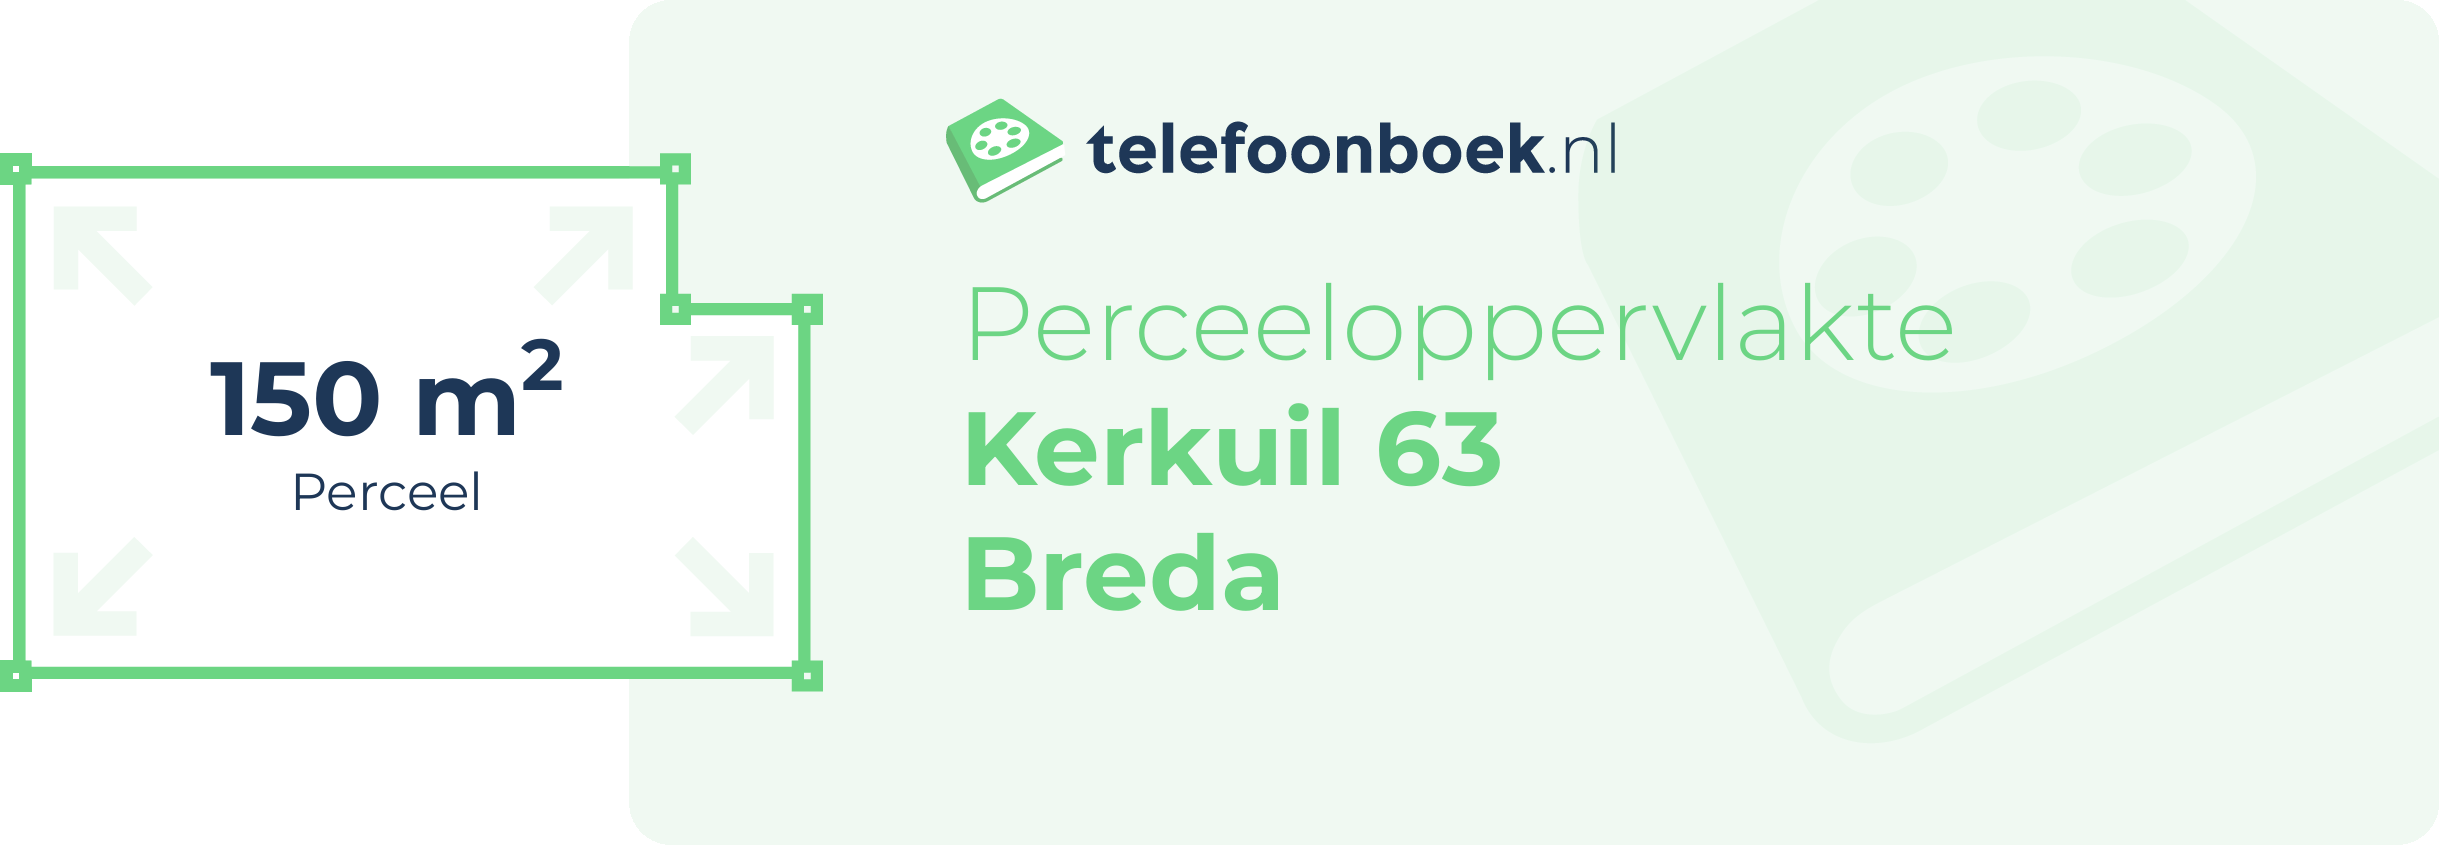 Perceeloppervlakte Kerkuil 63 Breda